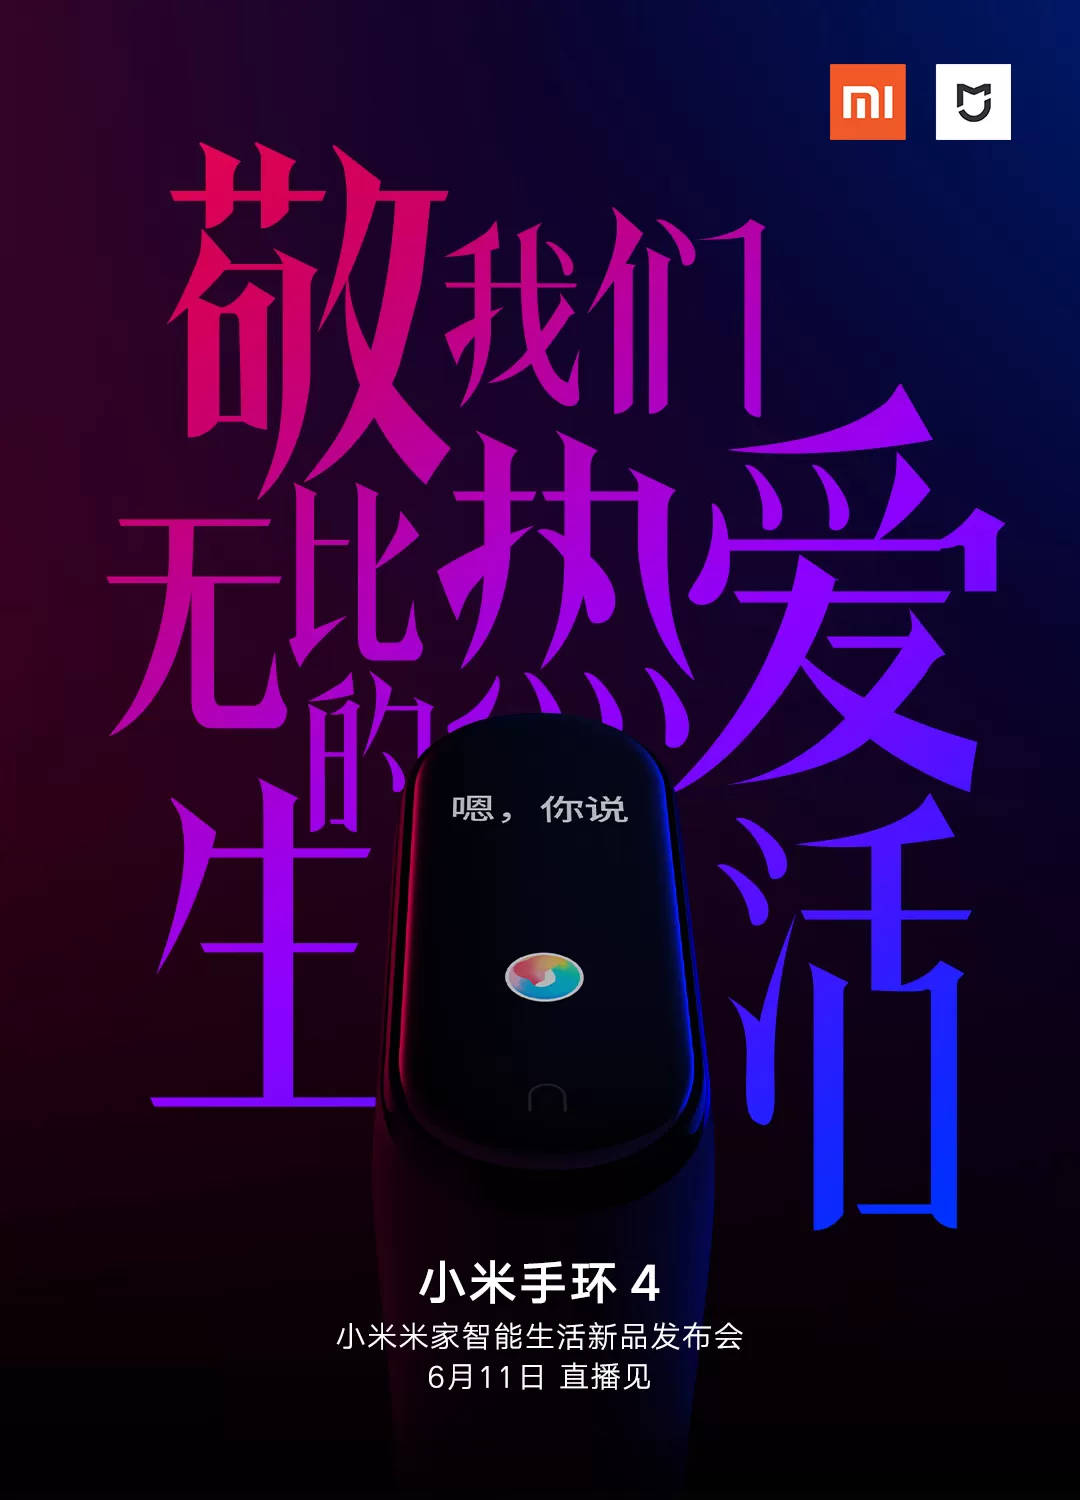 Xiaomi Mi Band 4 kiedy data premiery plotki przecieki wycieki specyfikacja techniczna opinie